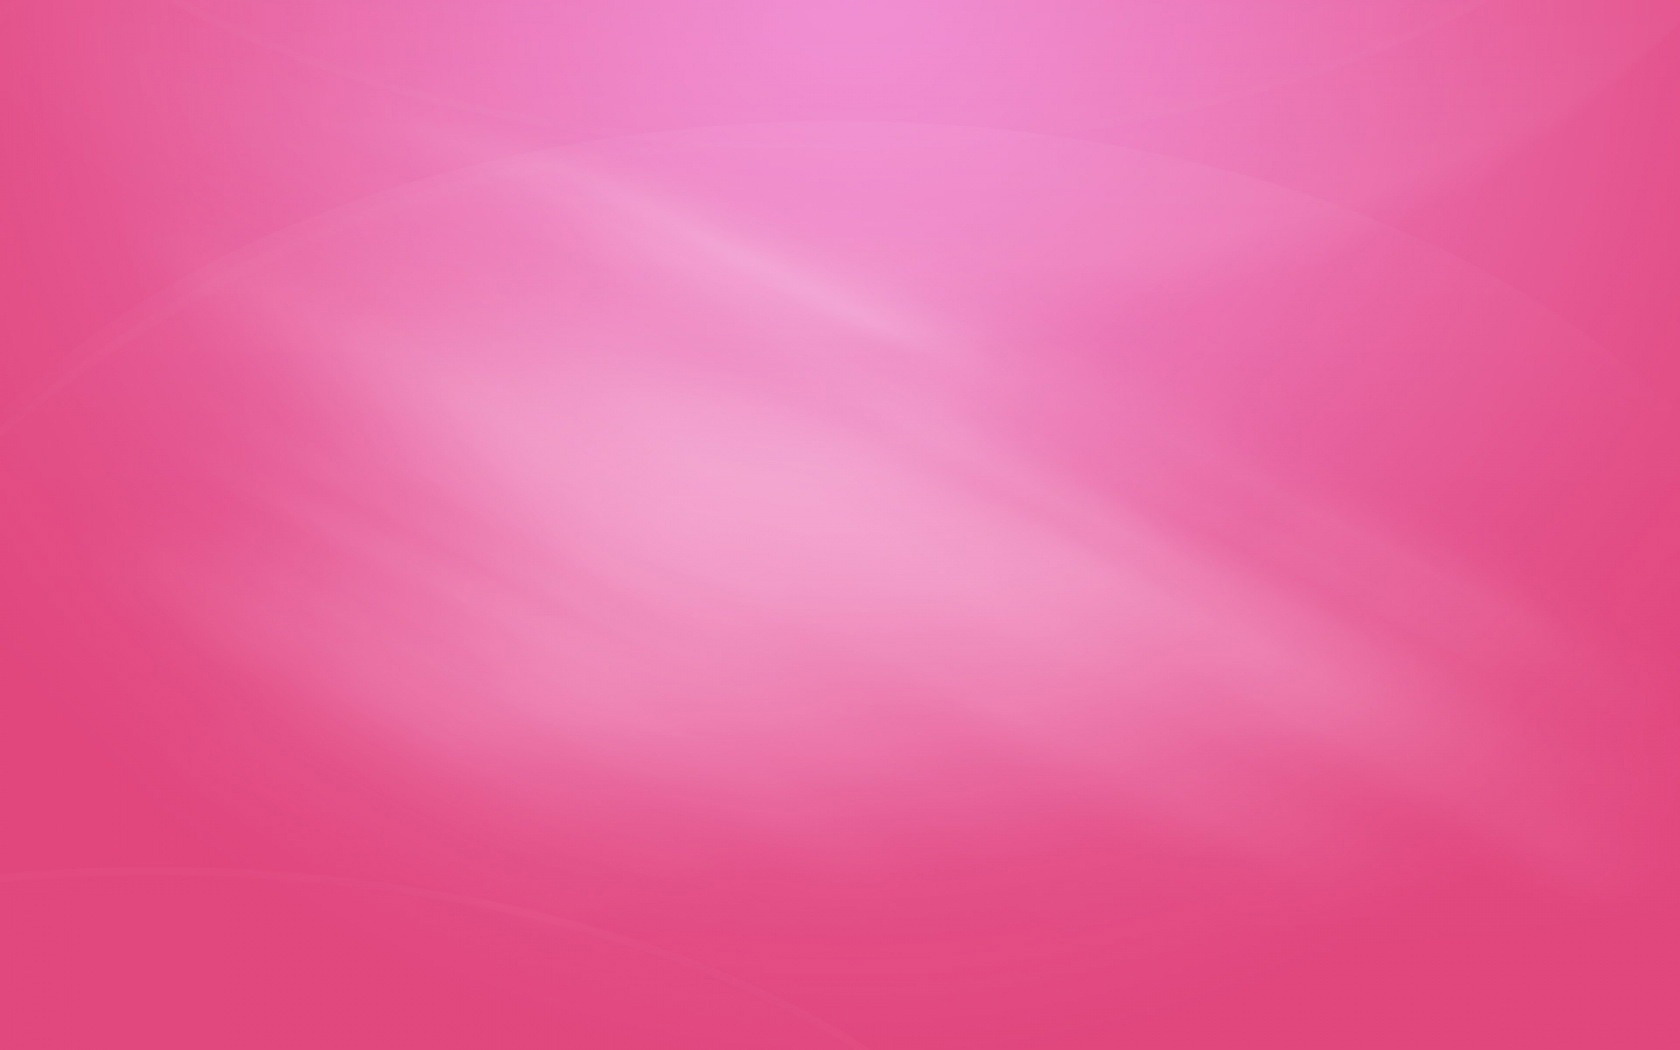 Windows Pink Puter Background